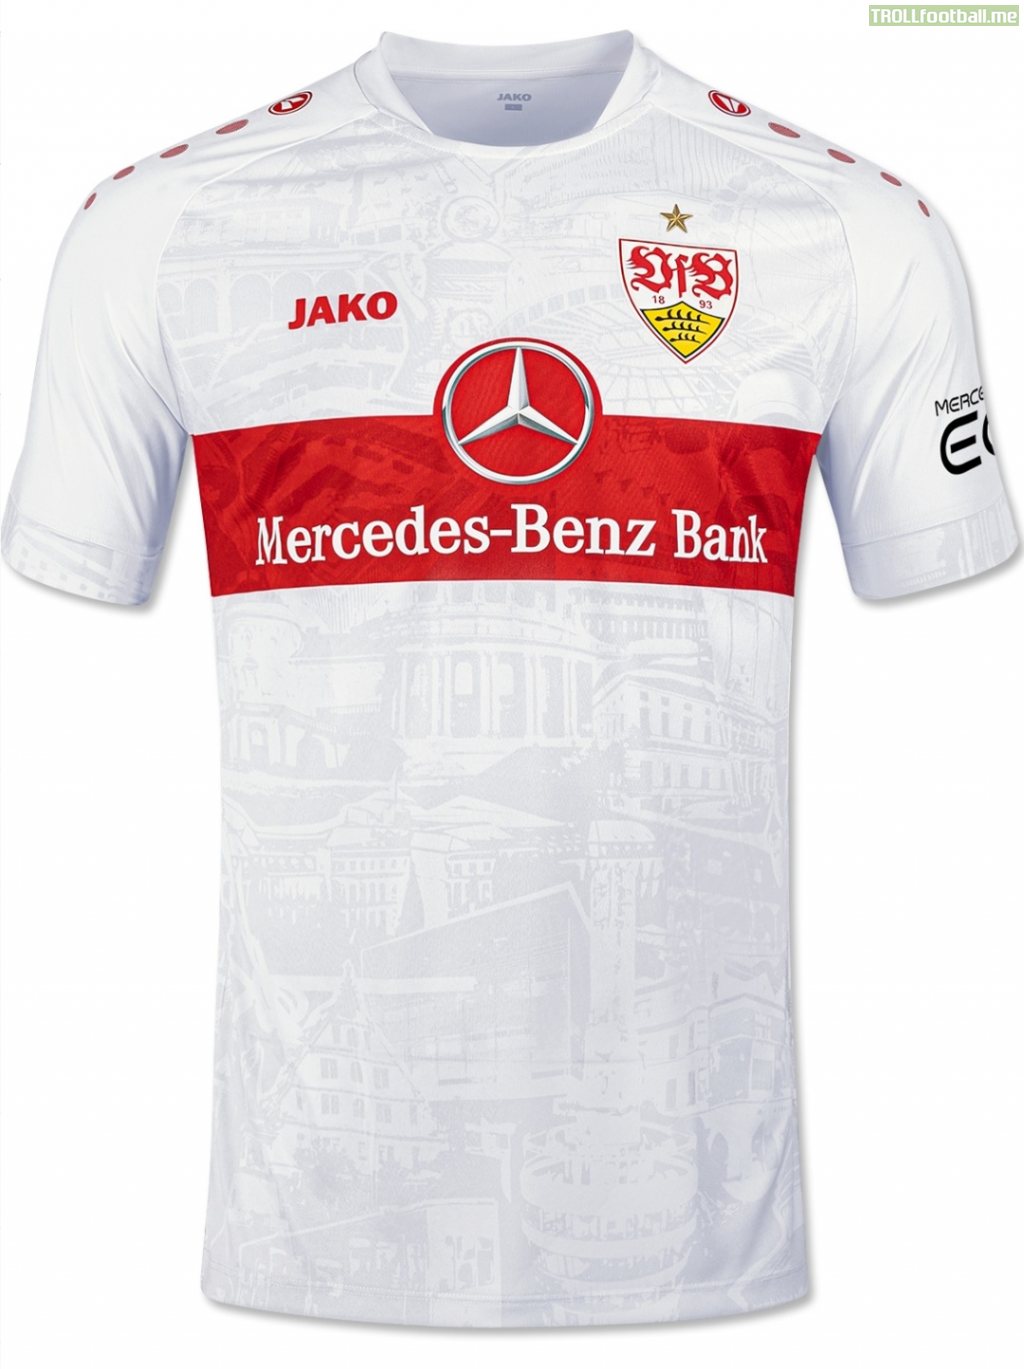 VfB Stuttgart new home jersey released